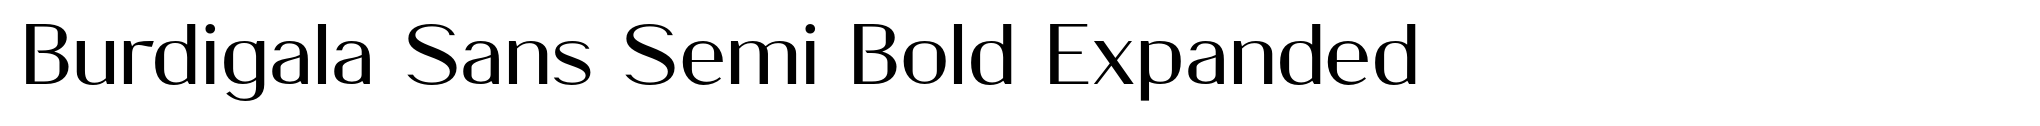 Burdigala Sans Semi Bold Expanded image